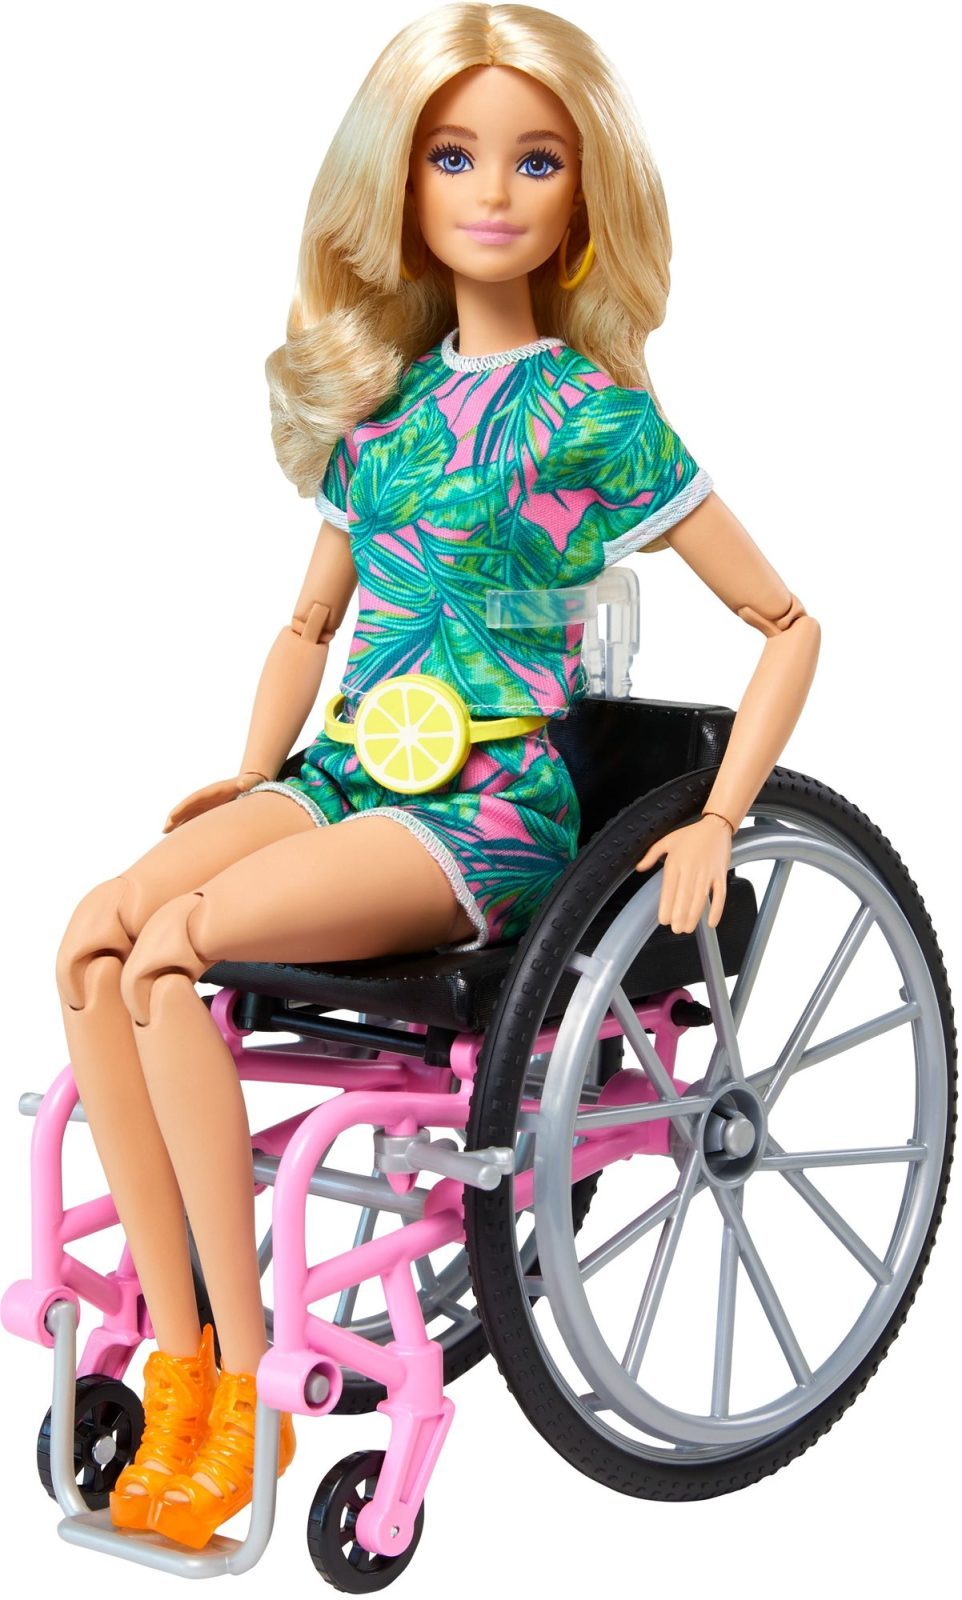 Játékbaba Barbie modell kerekesszékben - szőke